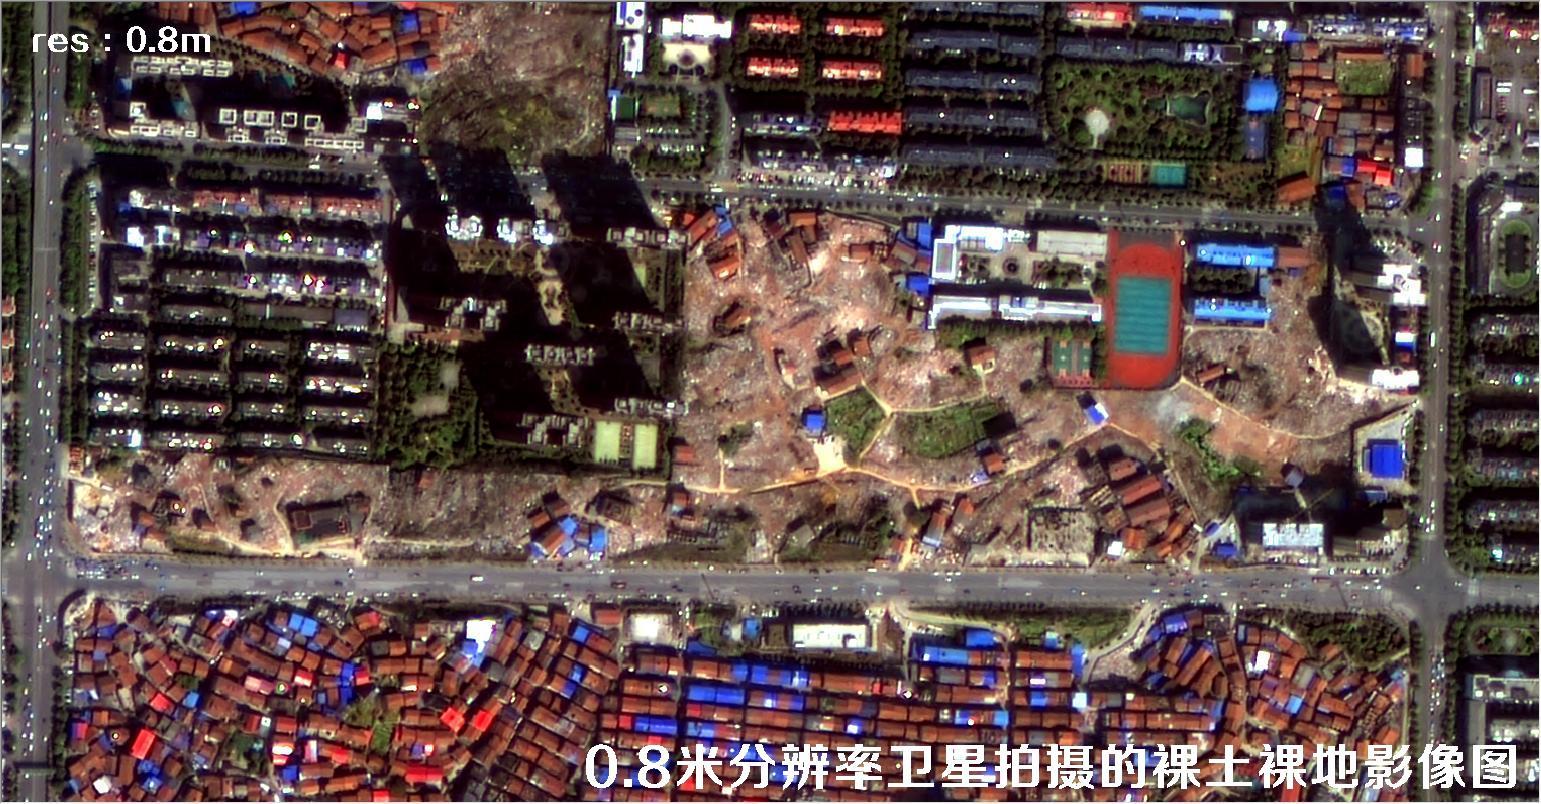 国产0.8米分辨率卫星拍摄的遥感影像图